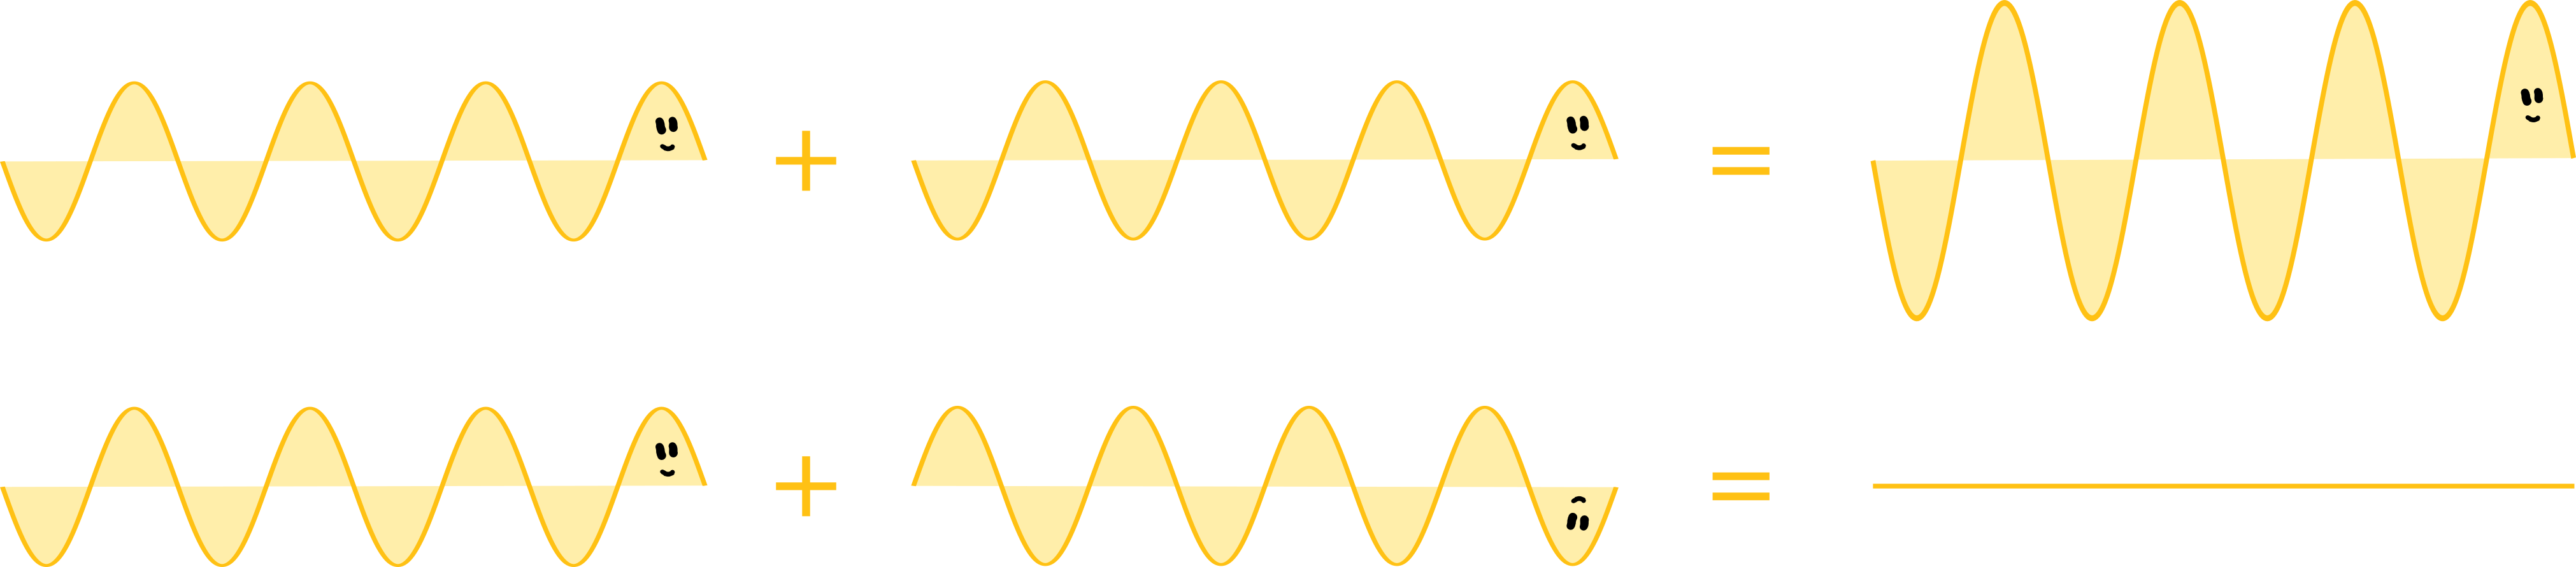 Interferenz zweier Wellenzüge